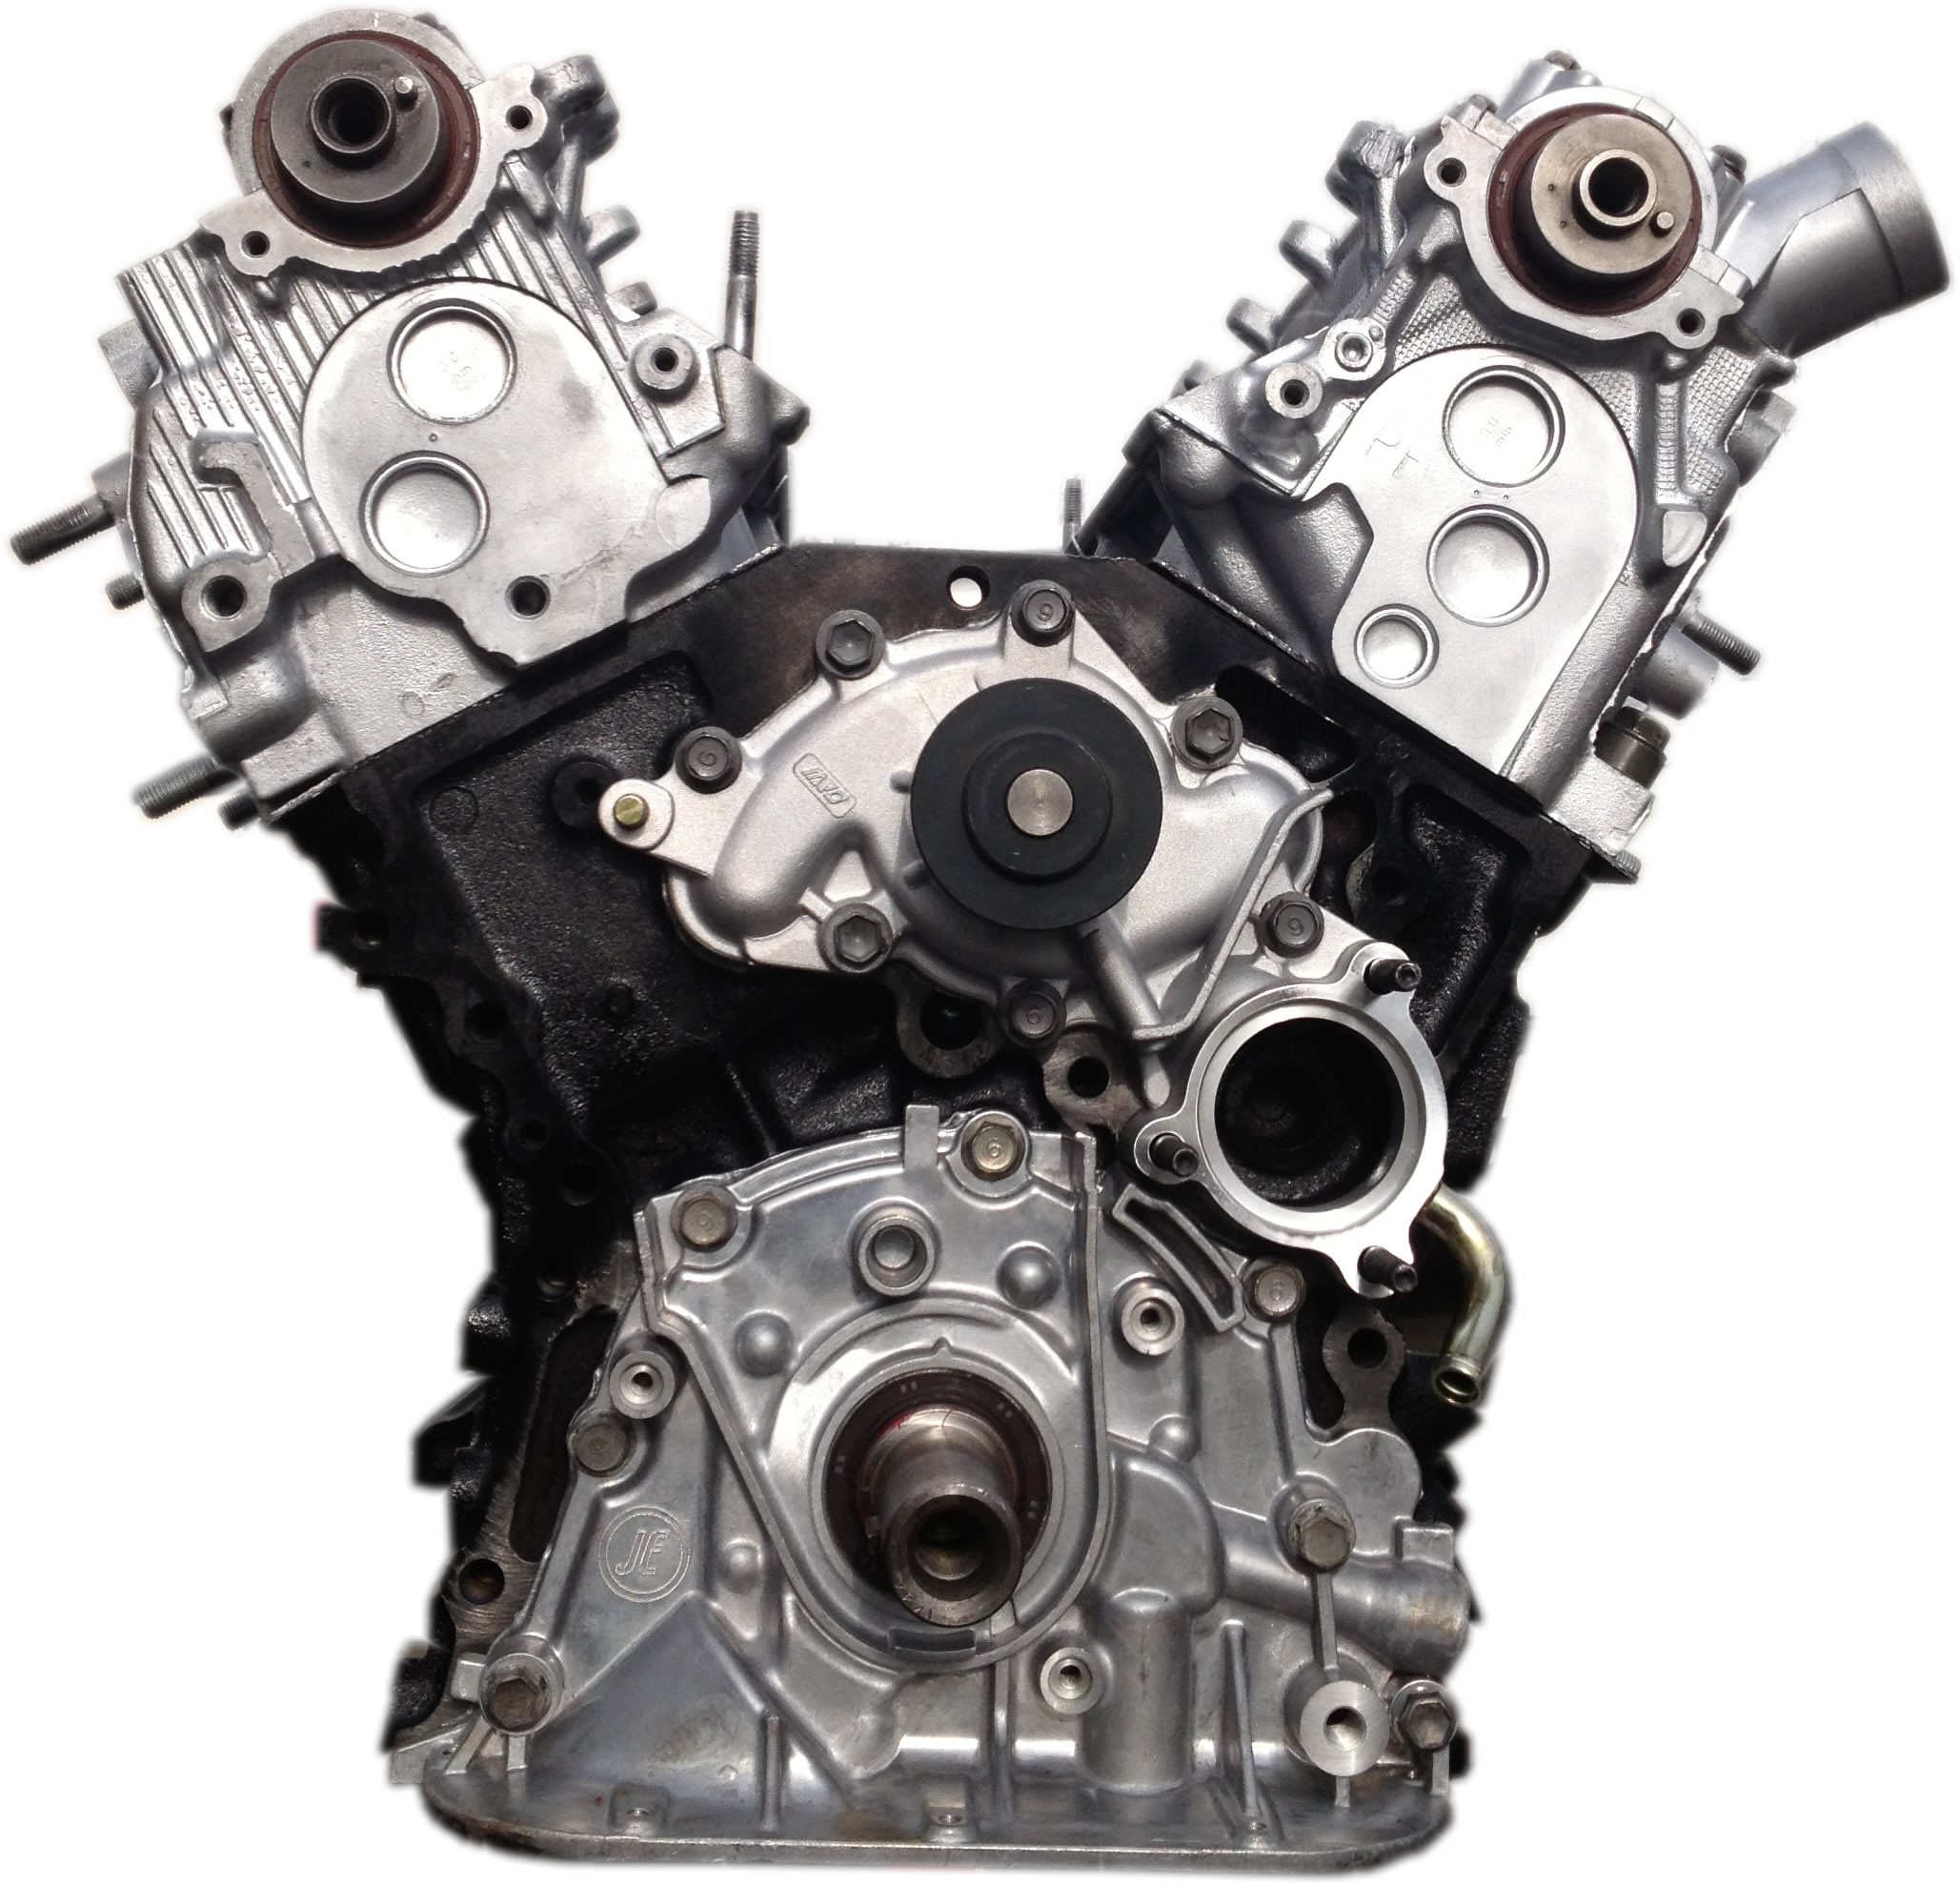 Rebuilt 89-95 Toyota 4Runner V6 3.0L 3VZE Engine « Kar King Auto